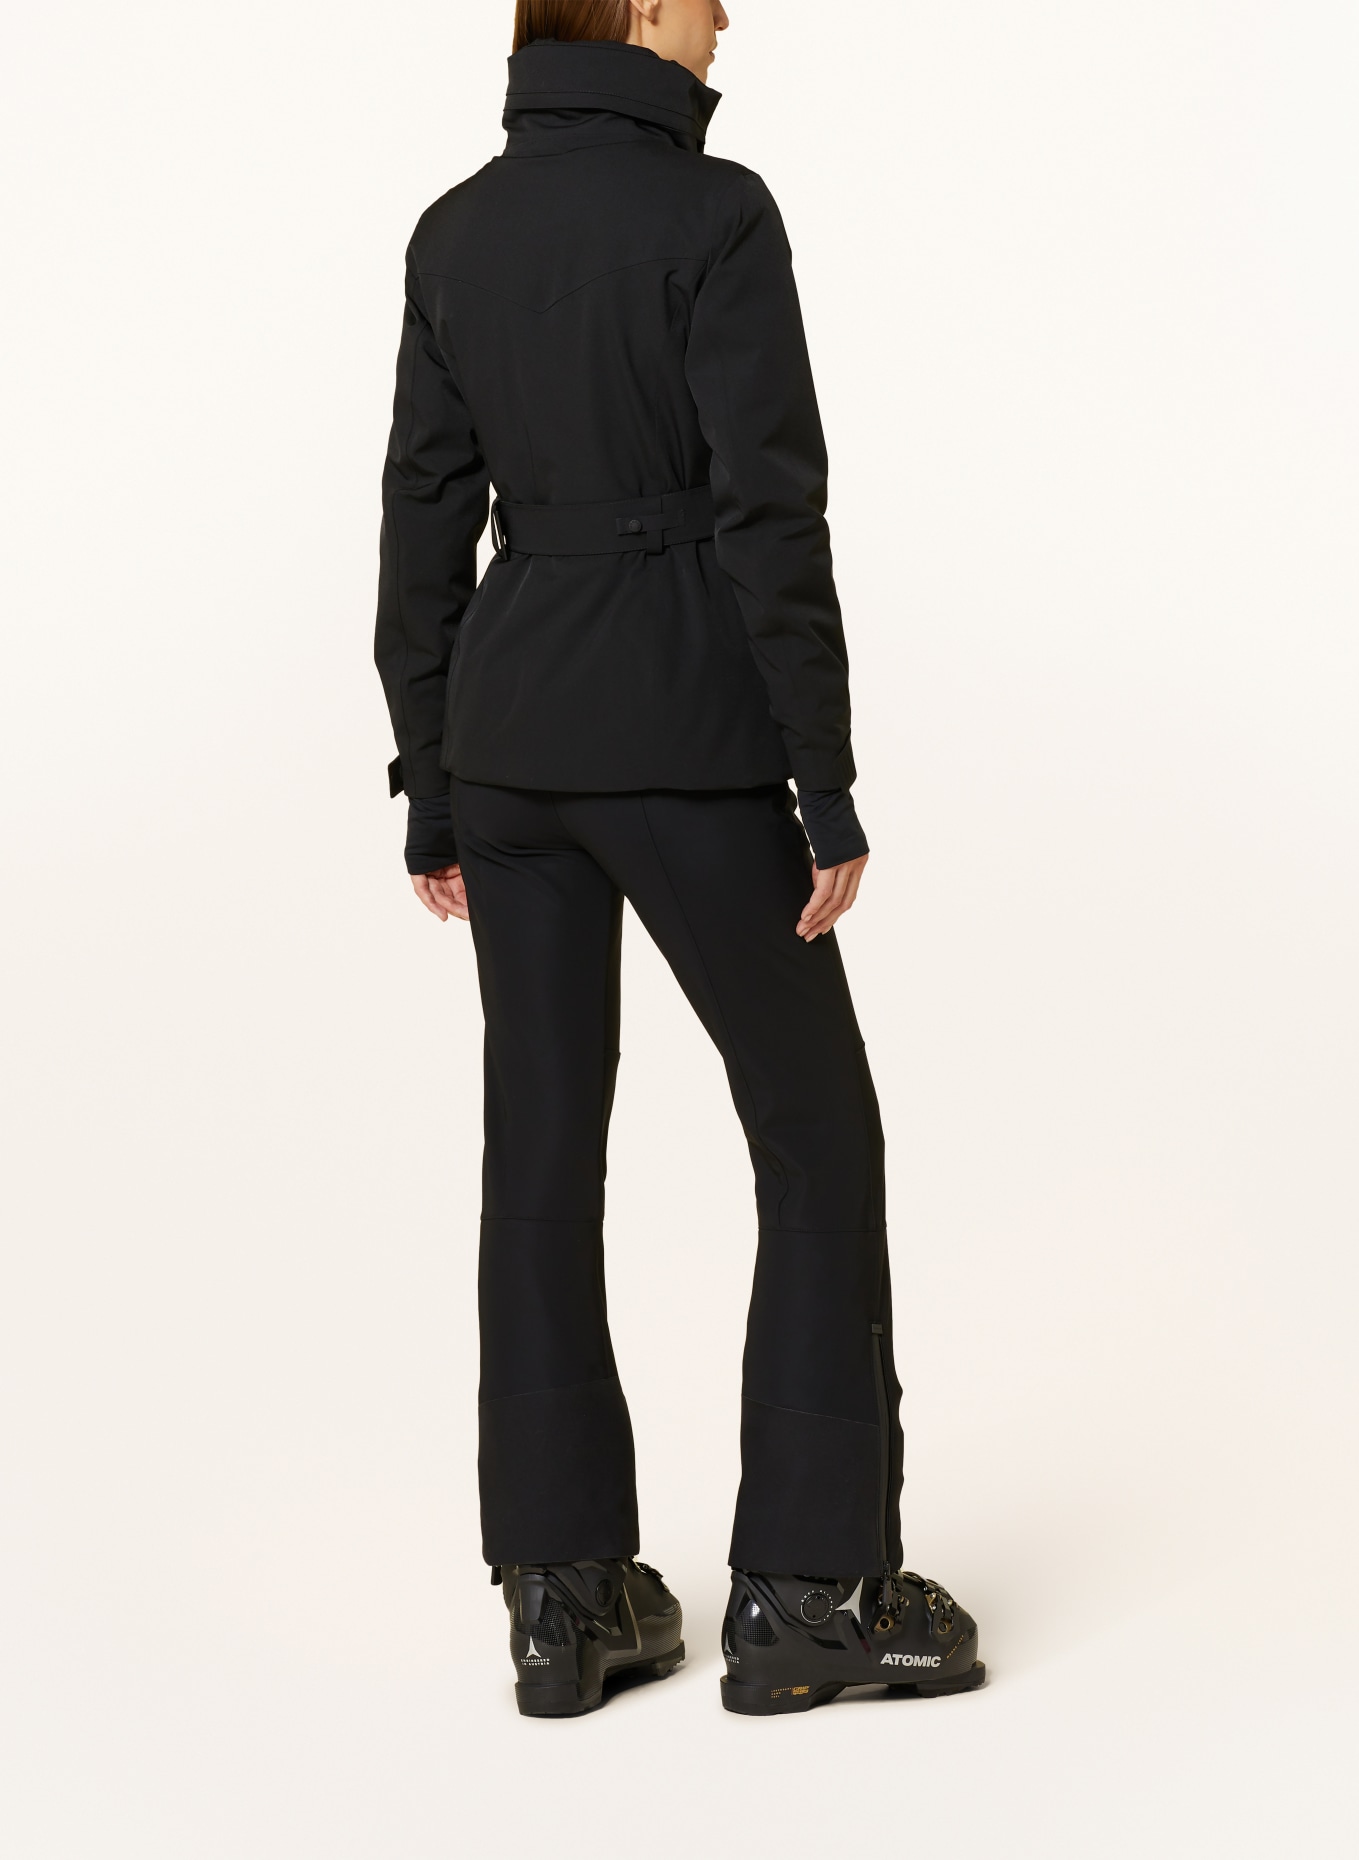 MONCLER GRENOBLE Ski jacket HAINET, Color: BLACK (Image 3)